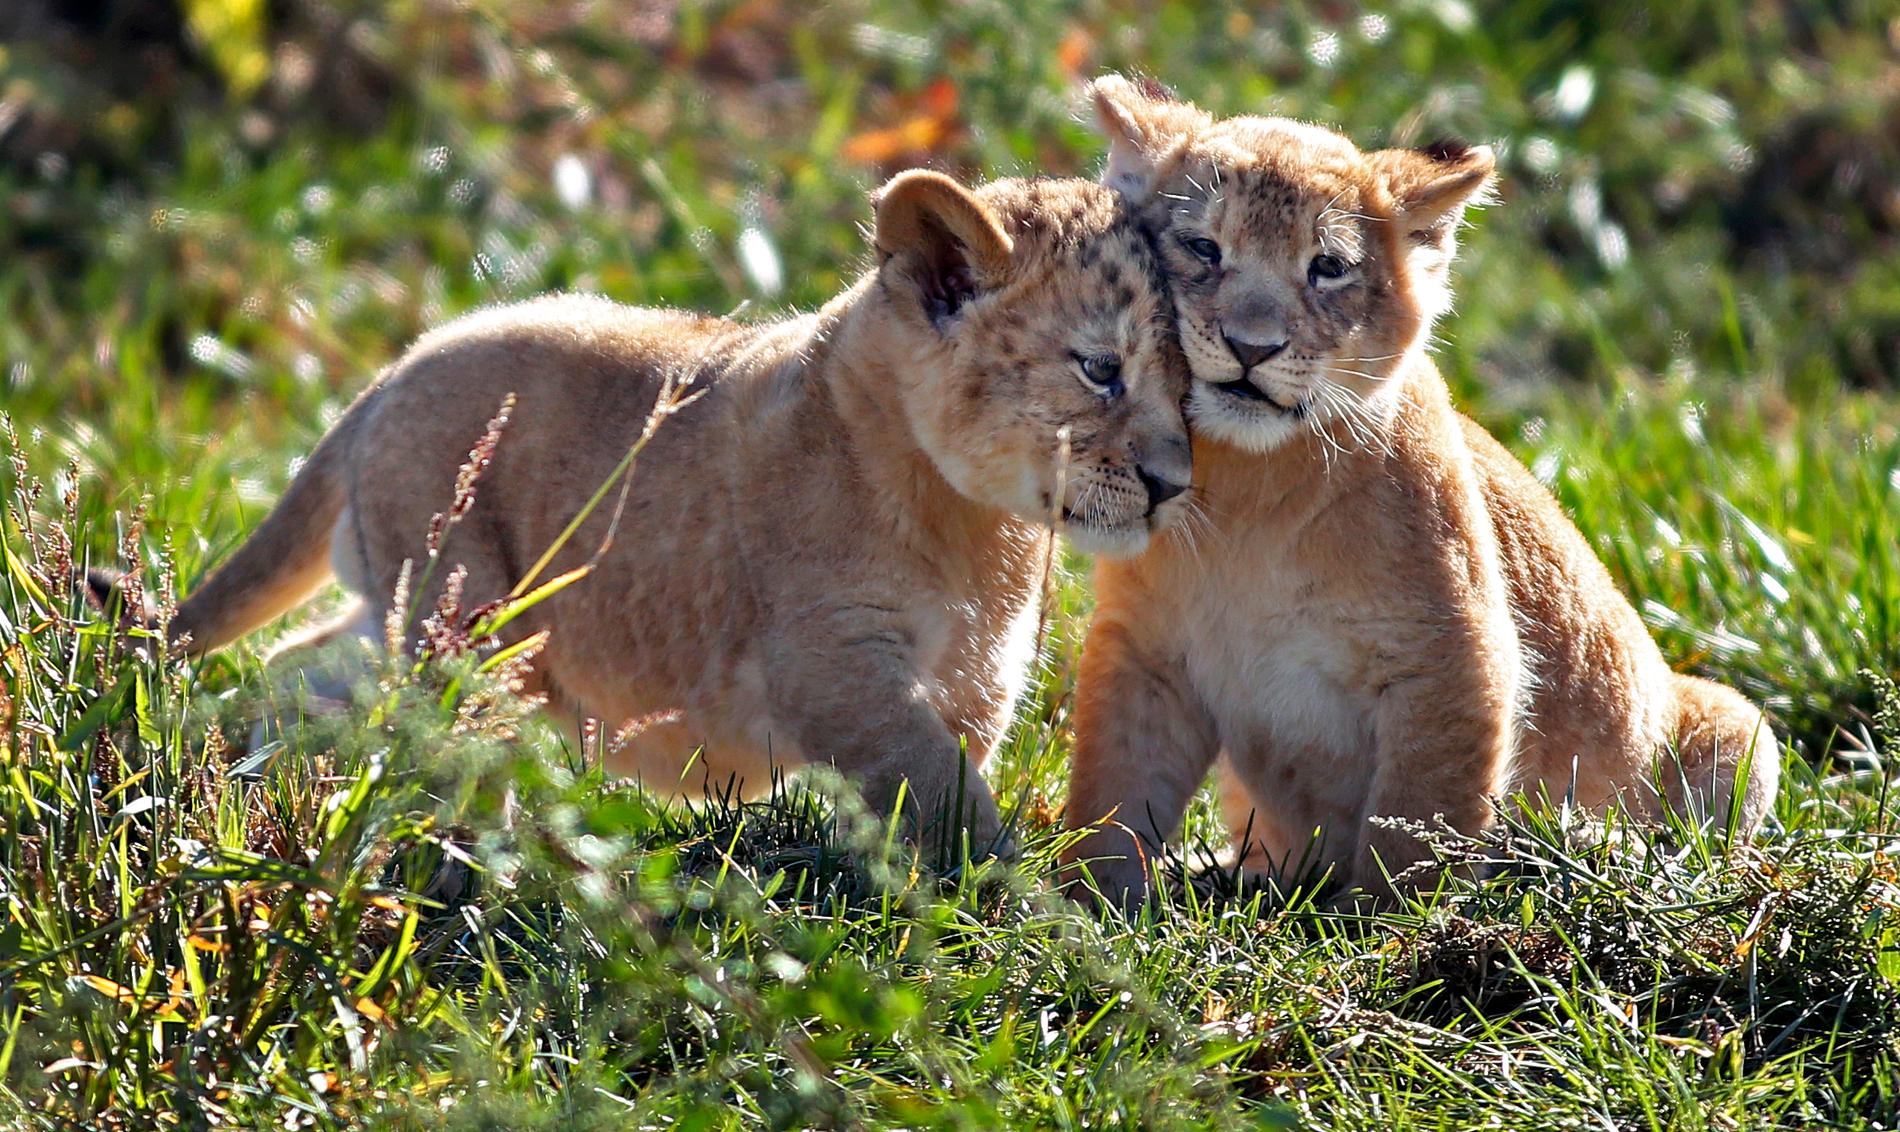 Columbus, USA: Columbus zoo har tidigare annonserat att de två nyfödde lejonungarna på zoo:t skulle visas upp under onsdagen. Och mycket riktigt, i går kunde besökare för första gången se småttingarna som lekte fritt i parken.